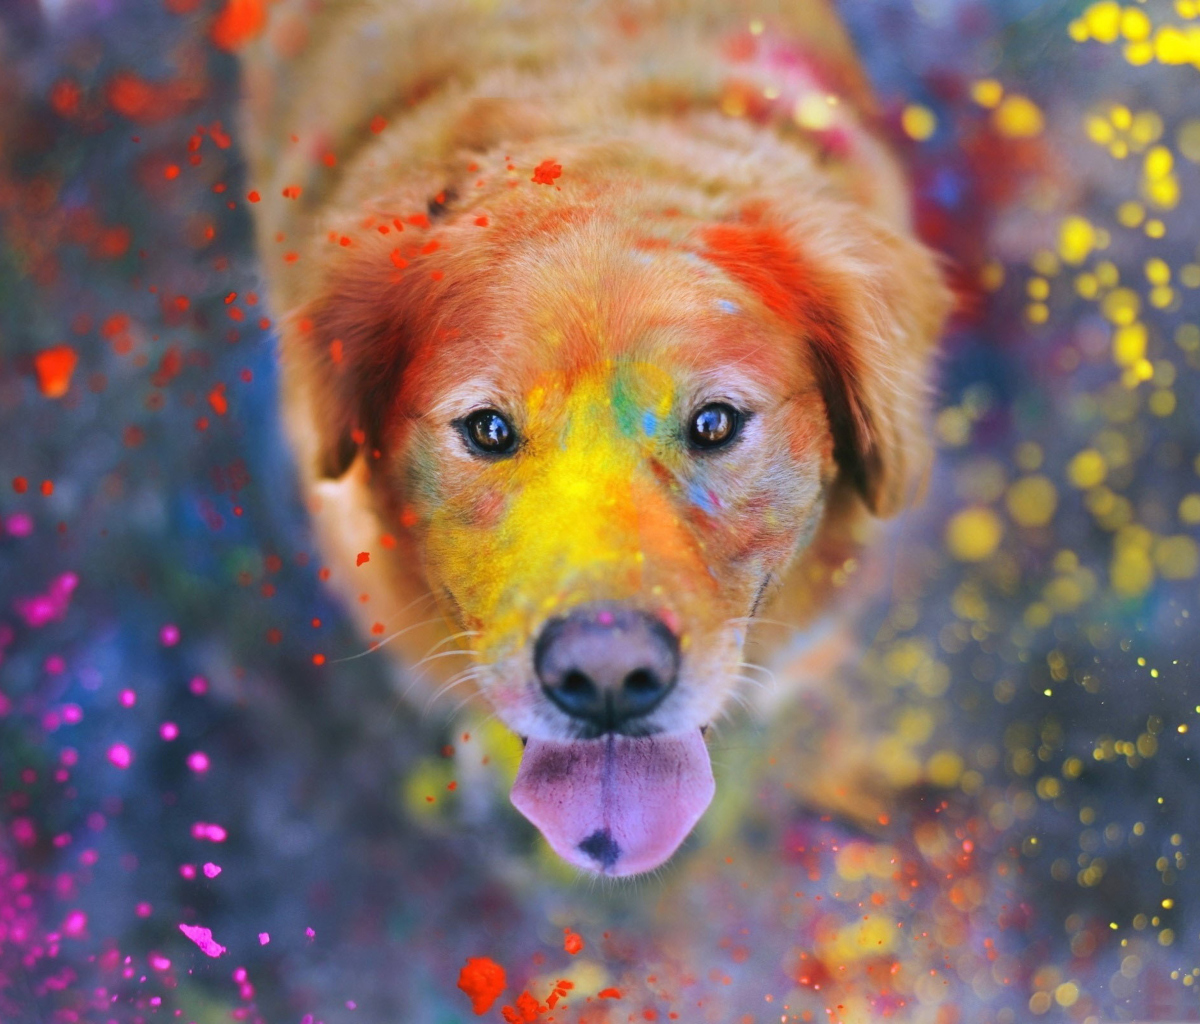 Обои Dog Under Colorful Rain 1200x1024